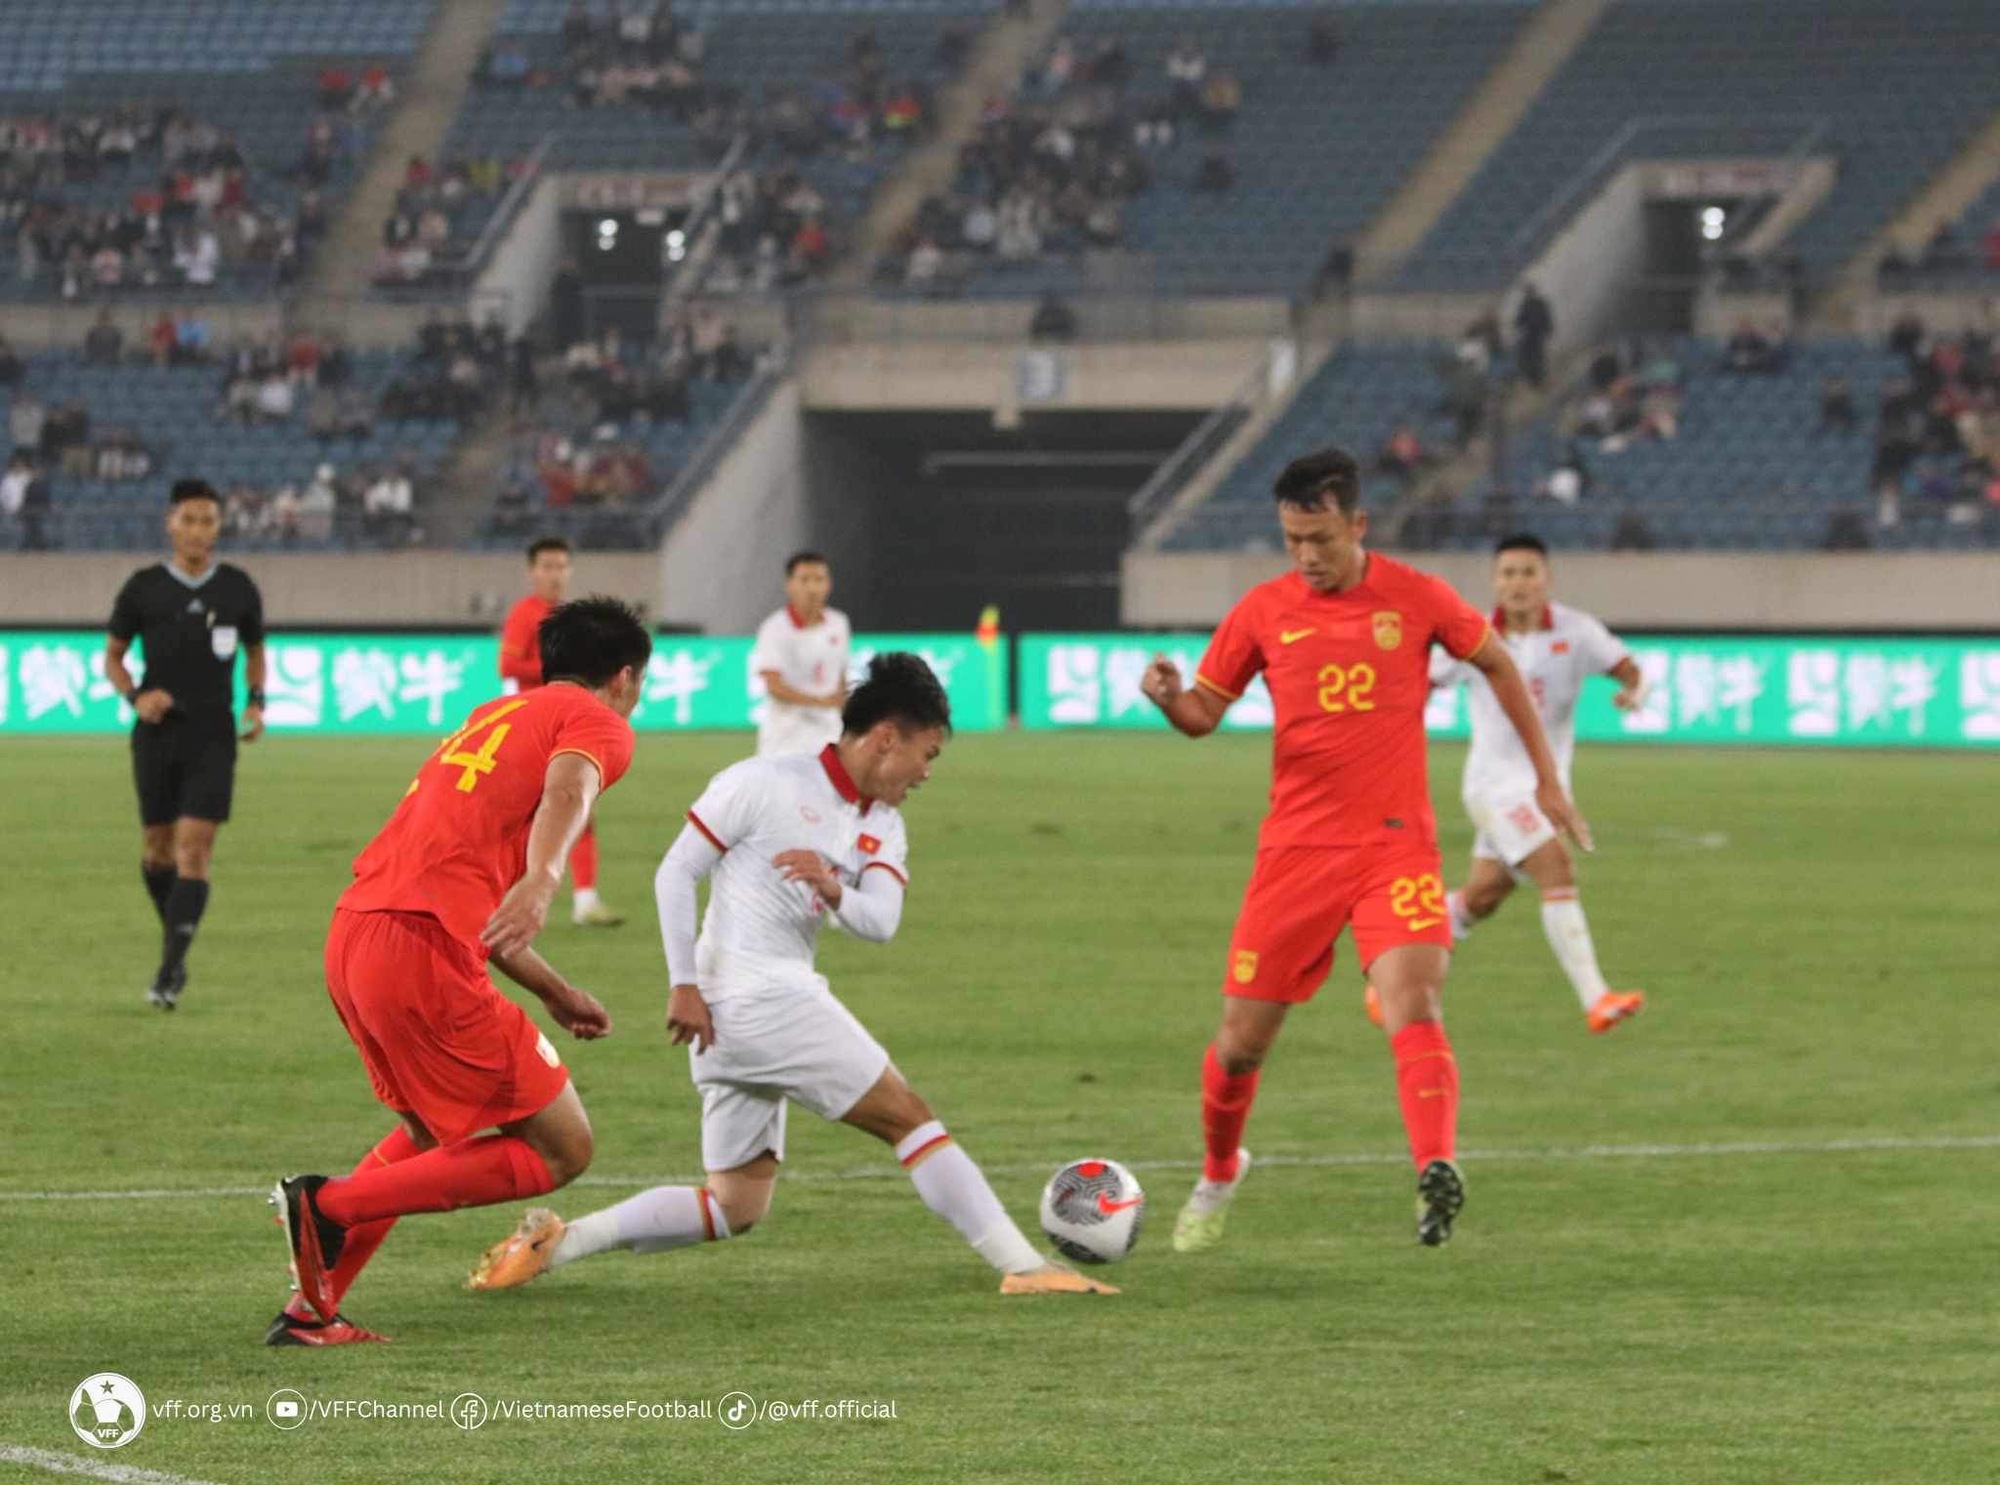 Đội tuyển Việt Nam không thể làm nên chuyện trước chủ nhà Trung Quốc - Ảnh 1.